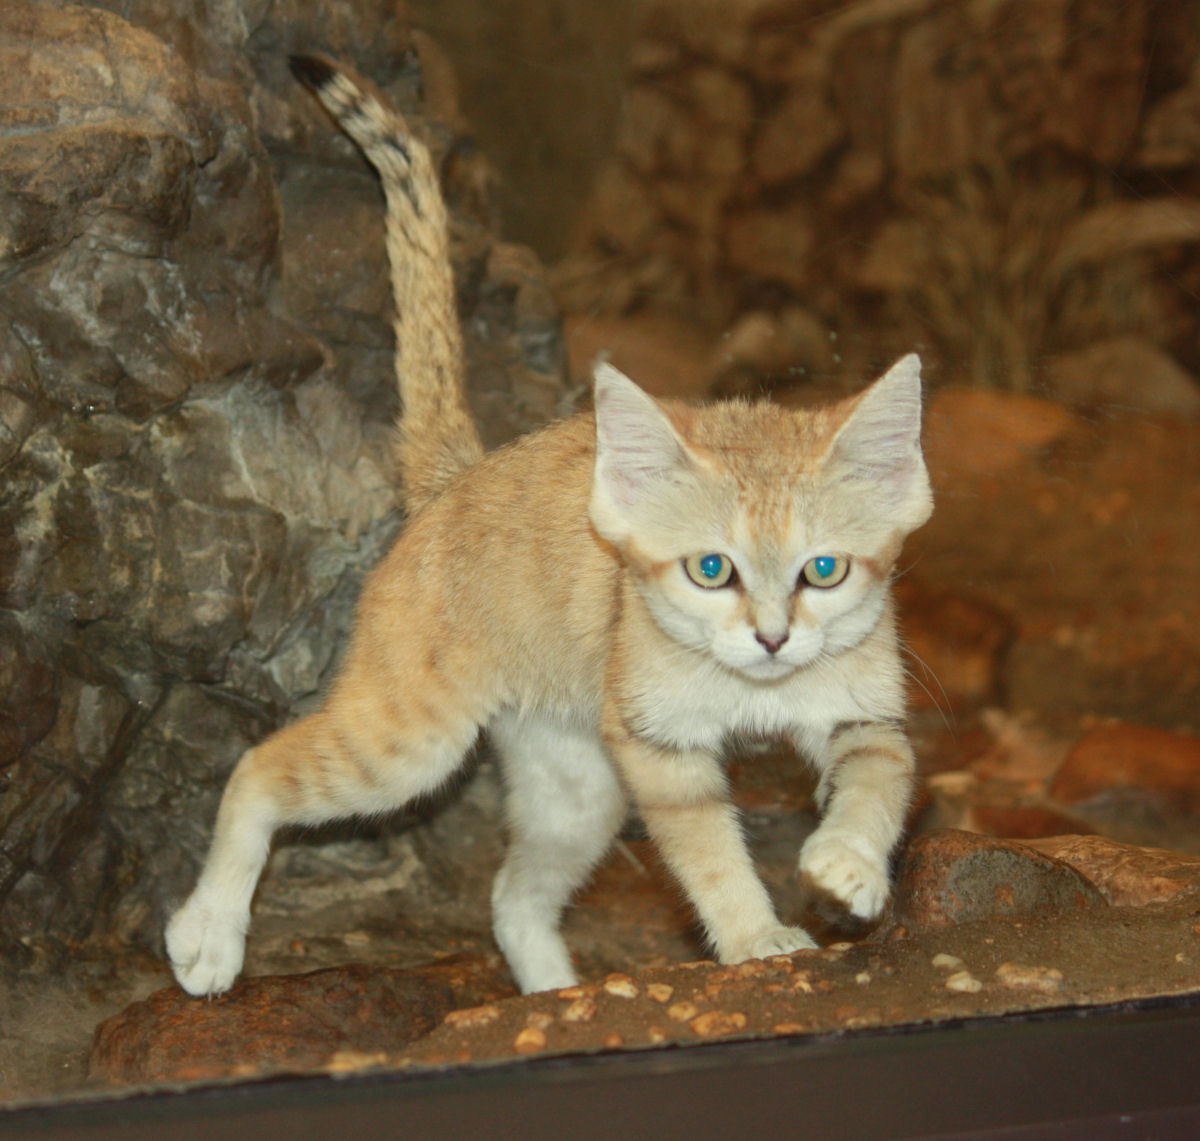 Gato-da-Areia, um felino selvagem do deserto